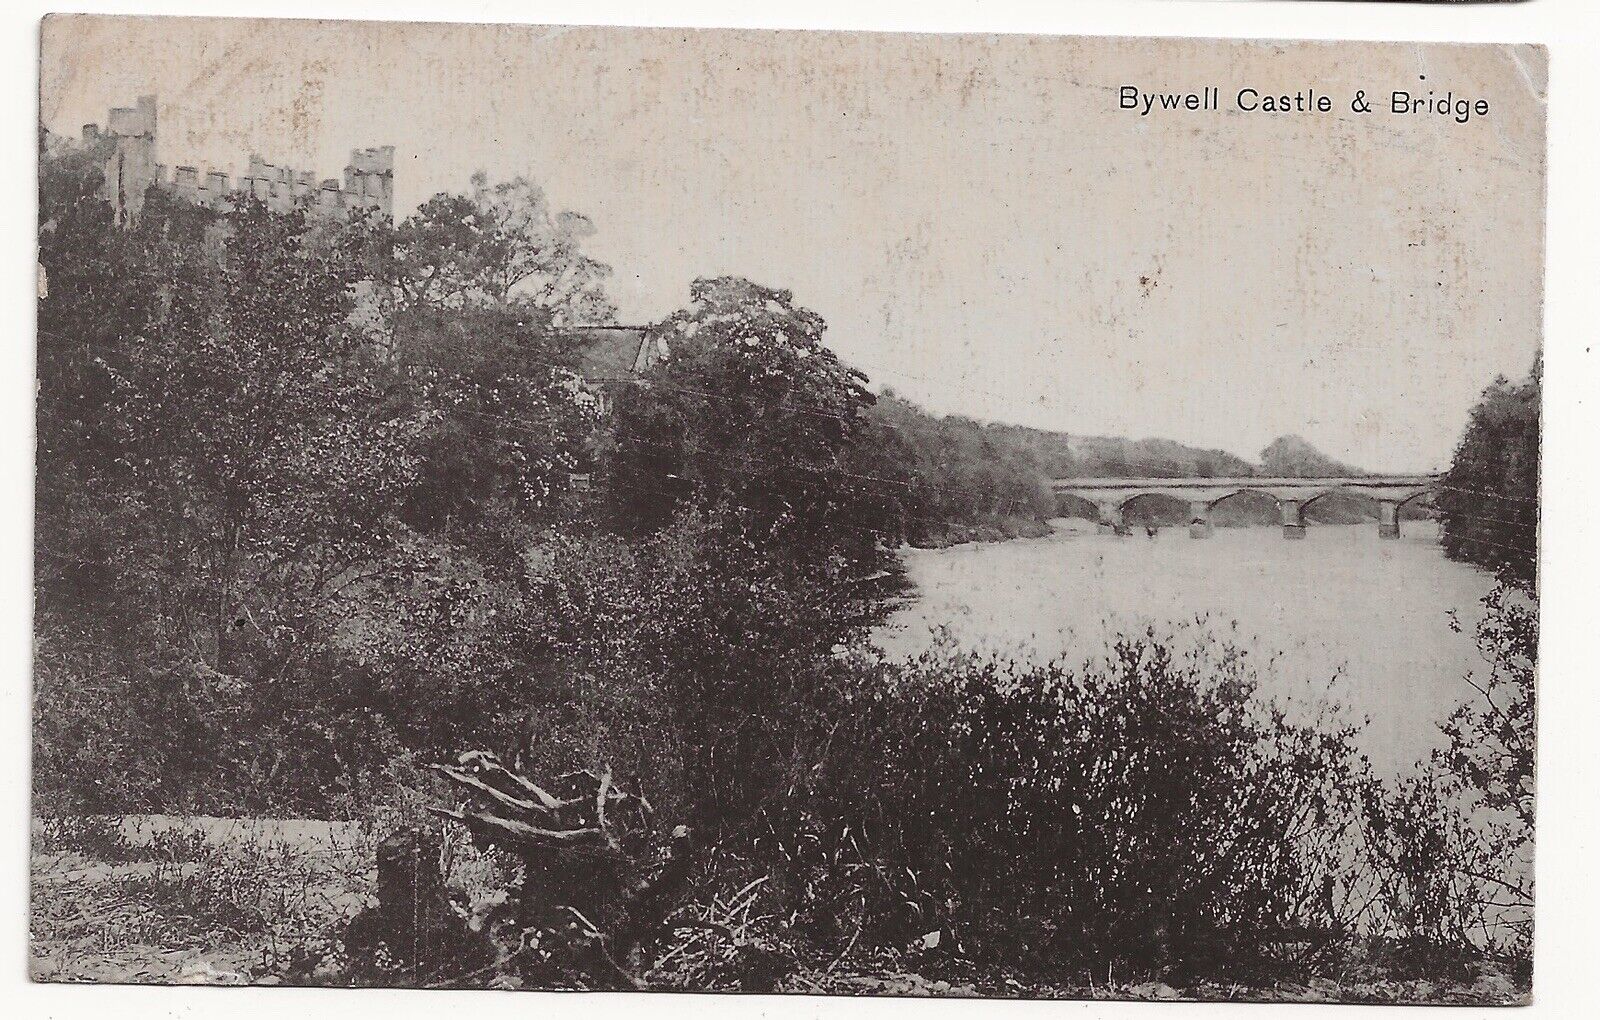 1906 Service Bywell Castle & Bridge Corbridge Northumberland